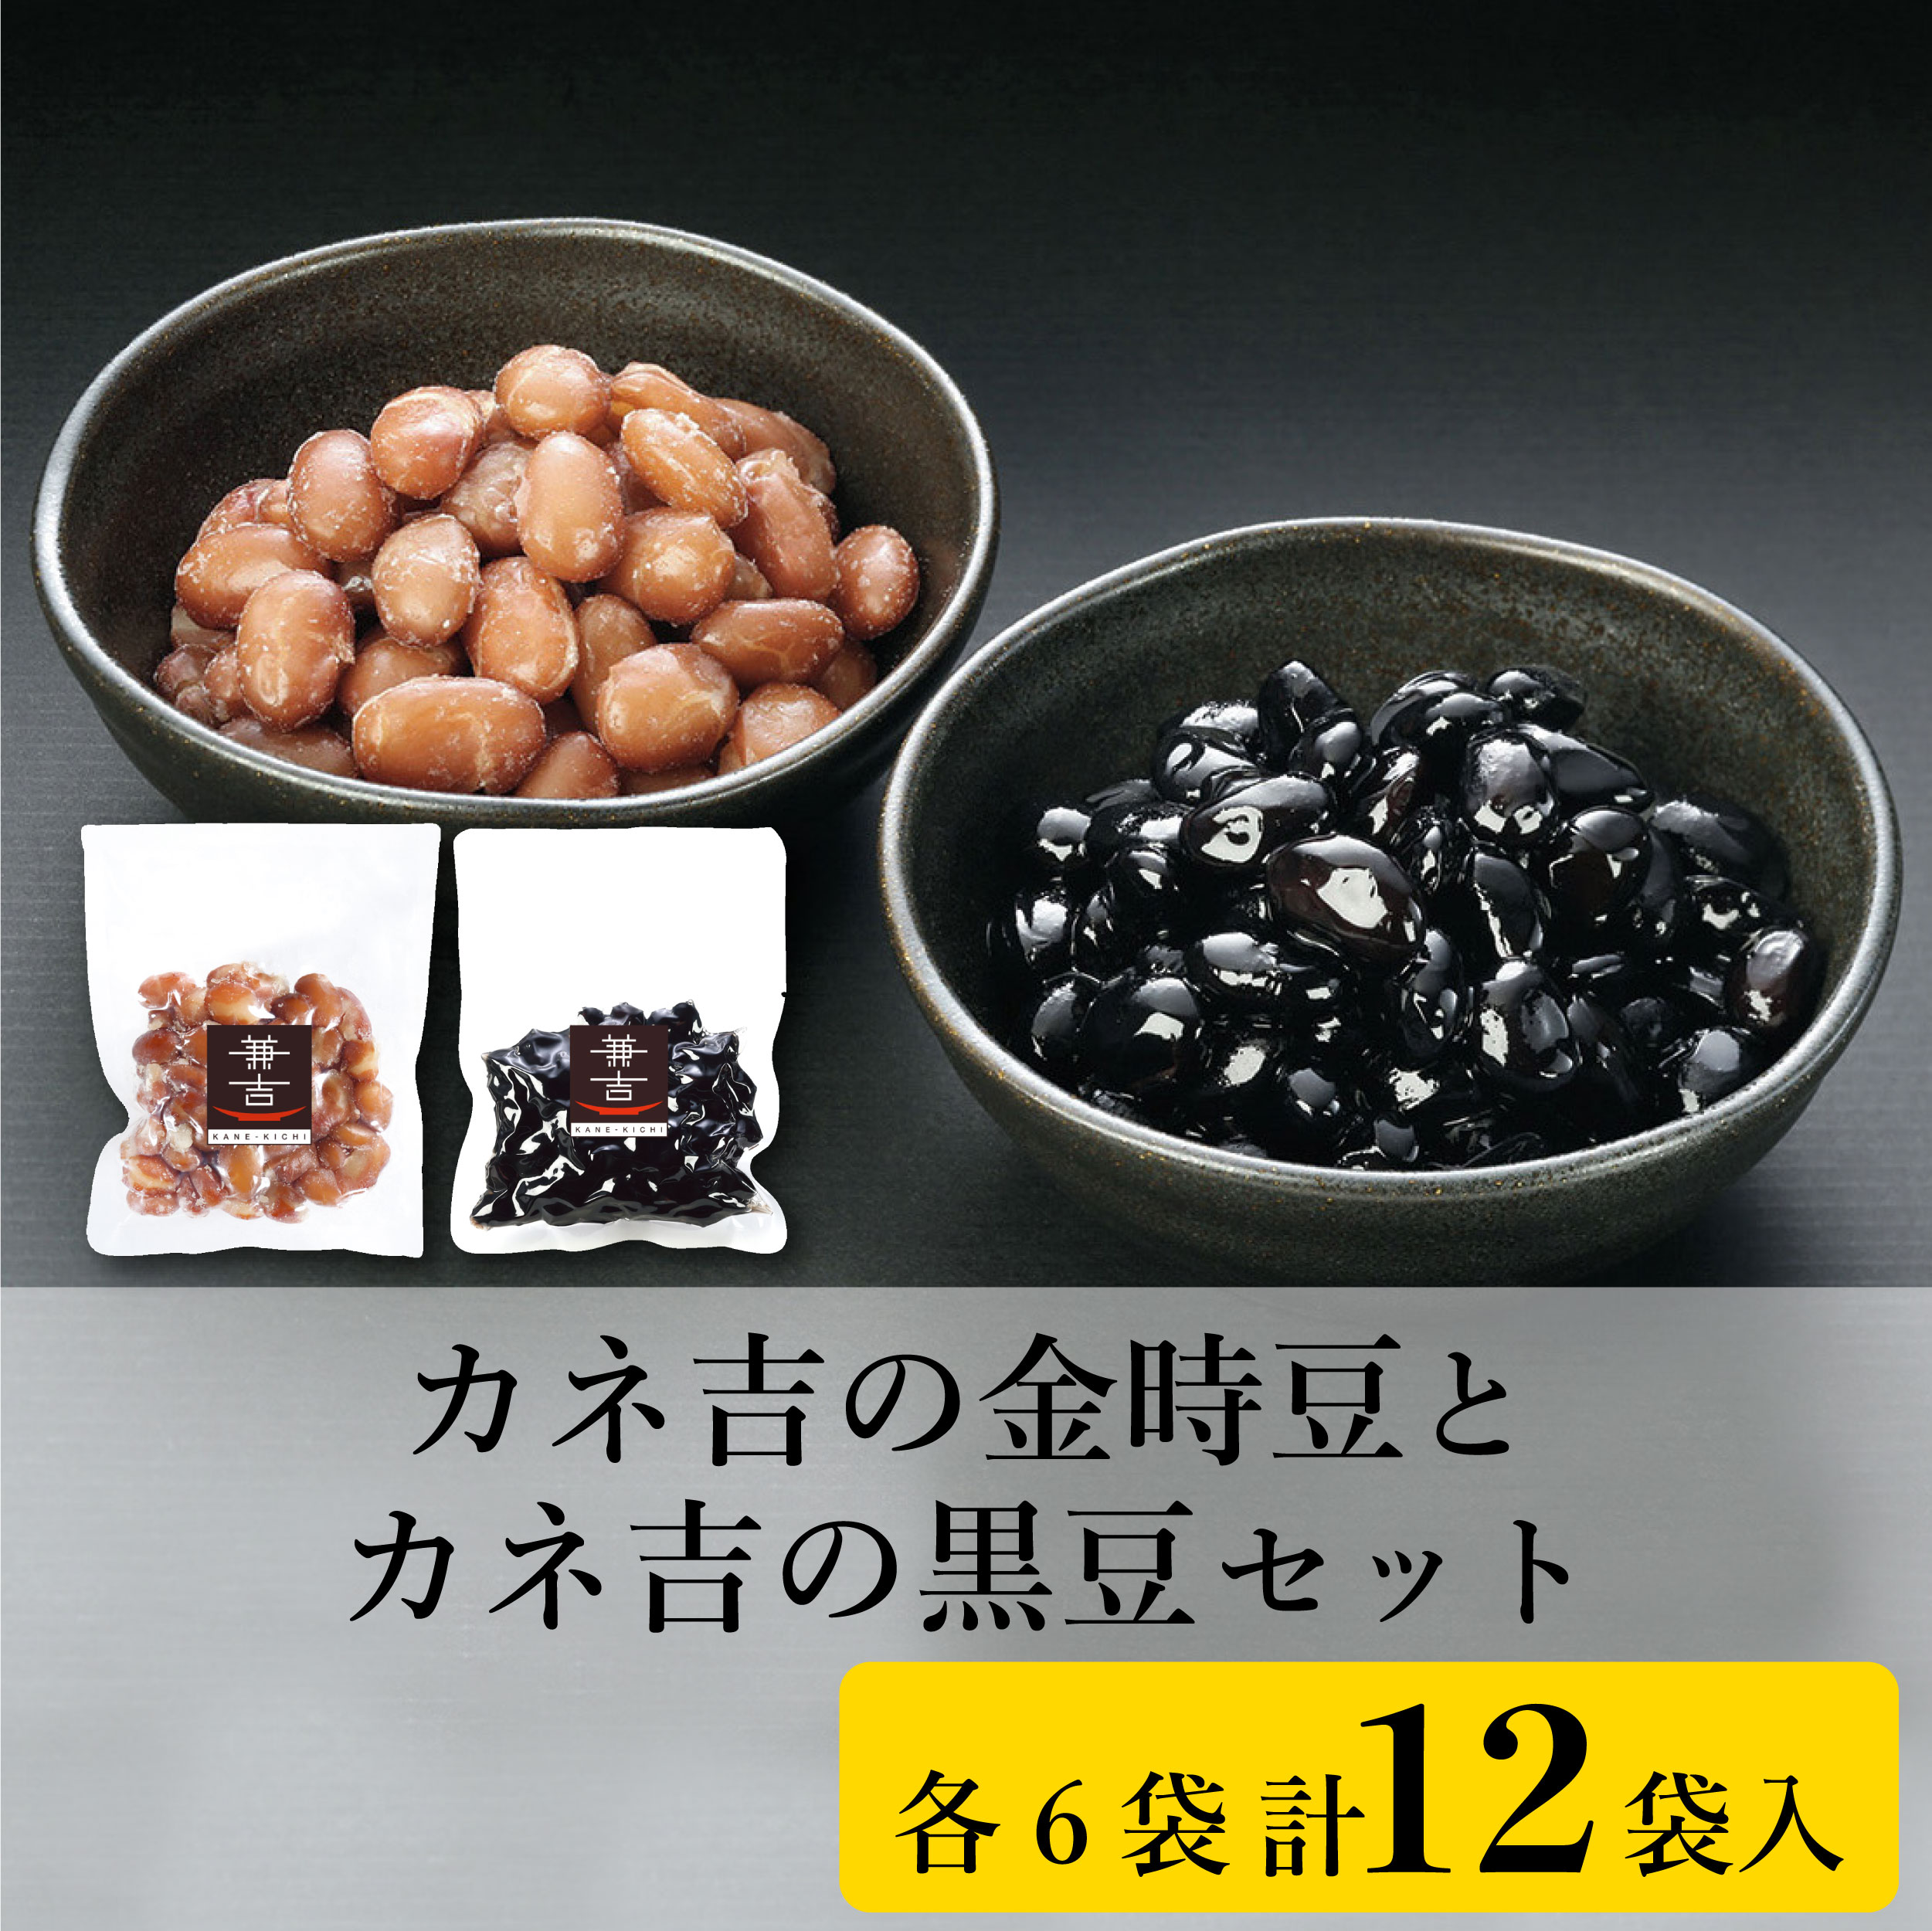 カネ吉の金時豆とカネ吉の黒豆セット